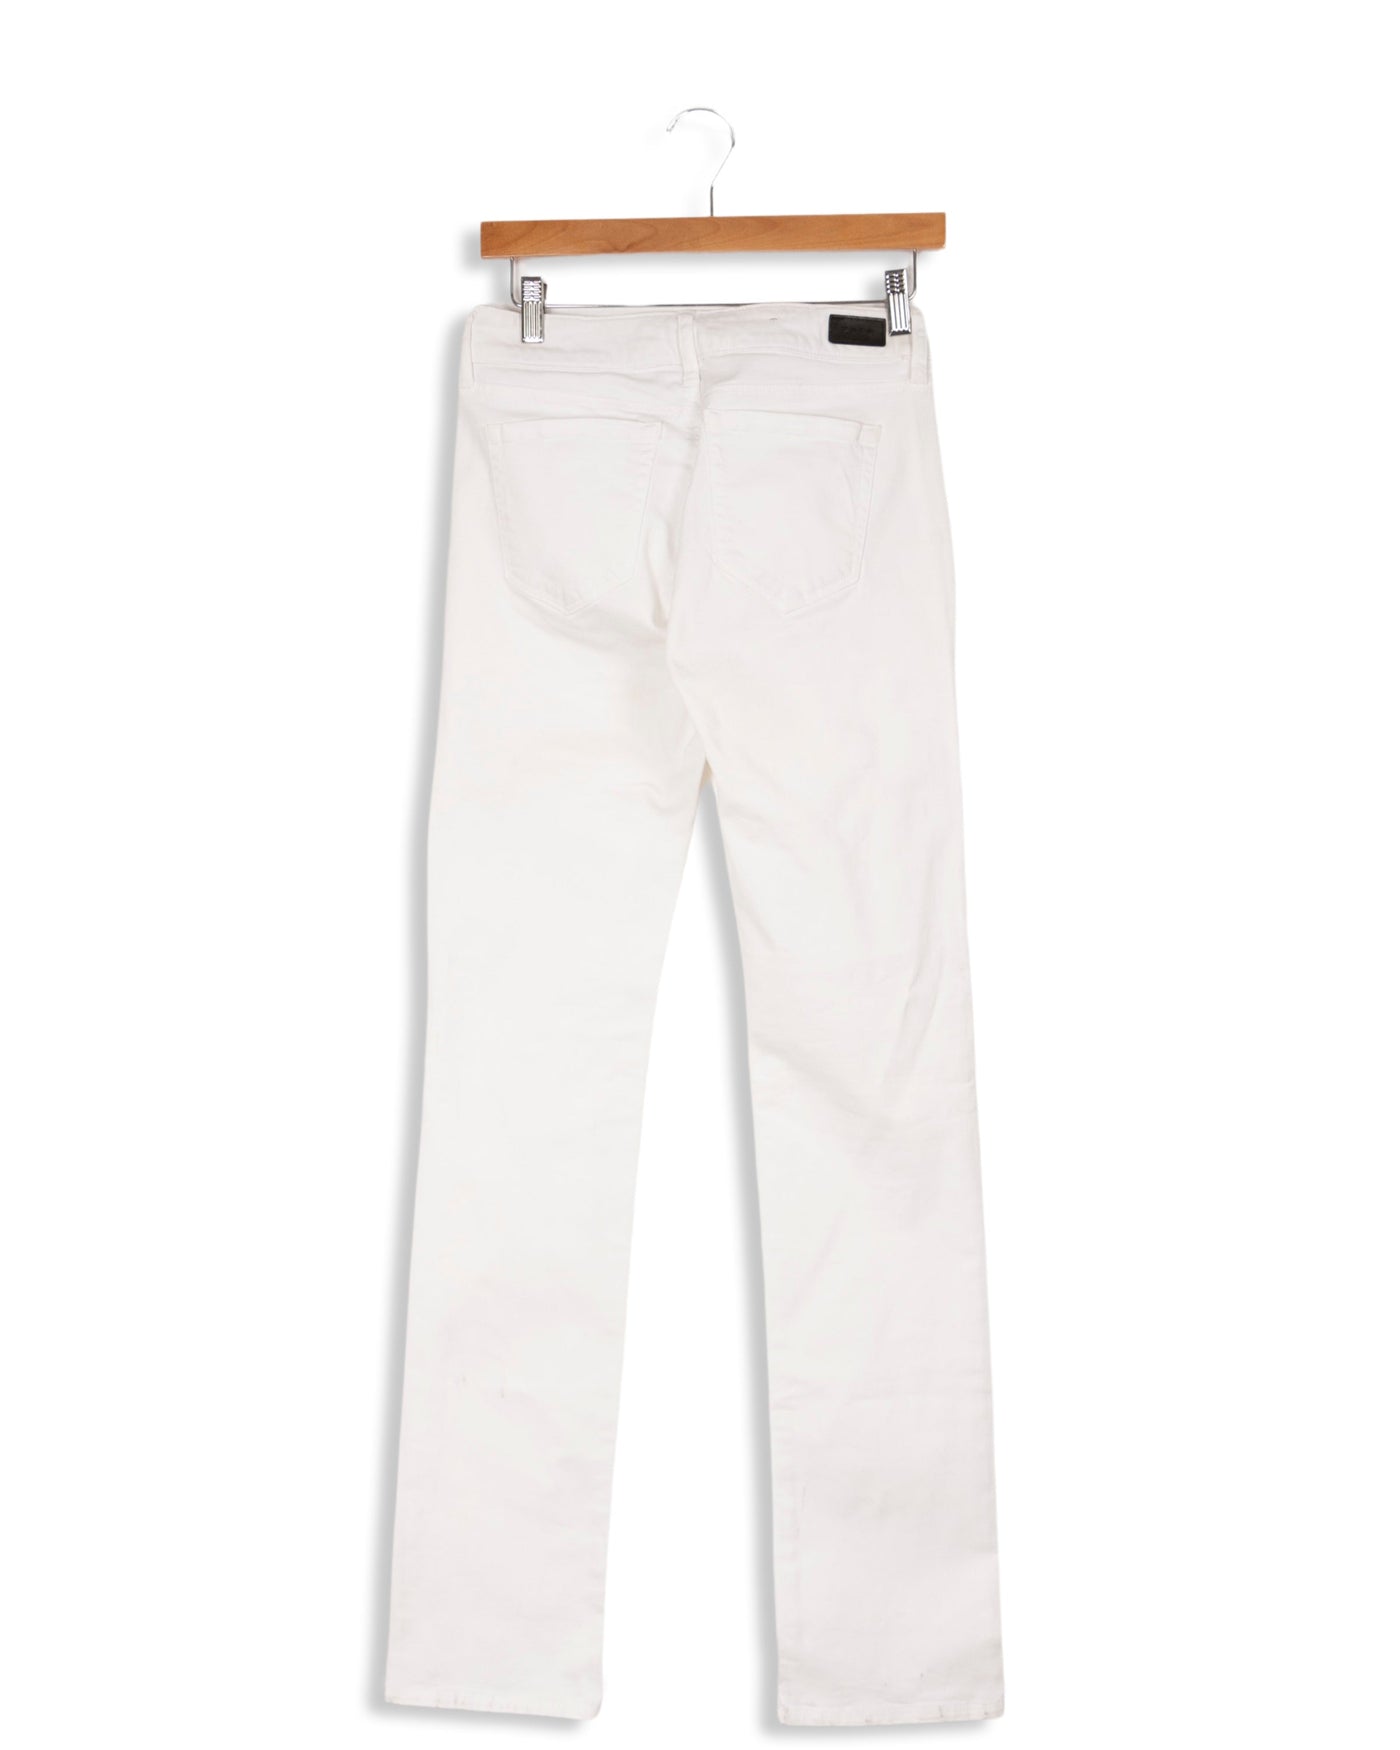 Pantalon blanc - 36